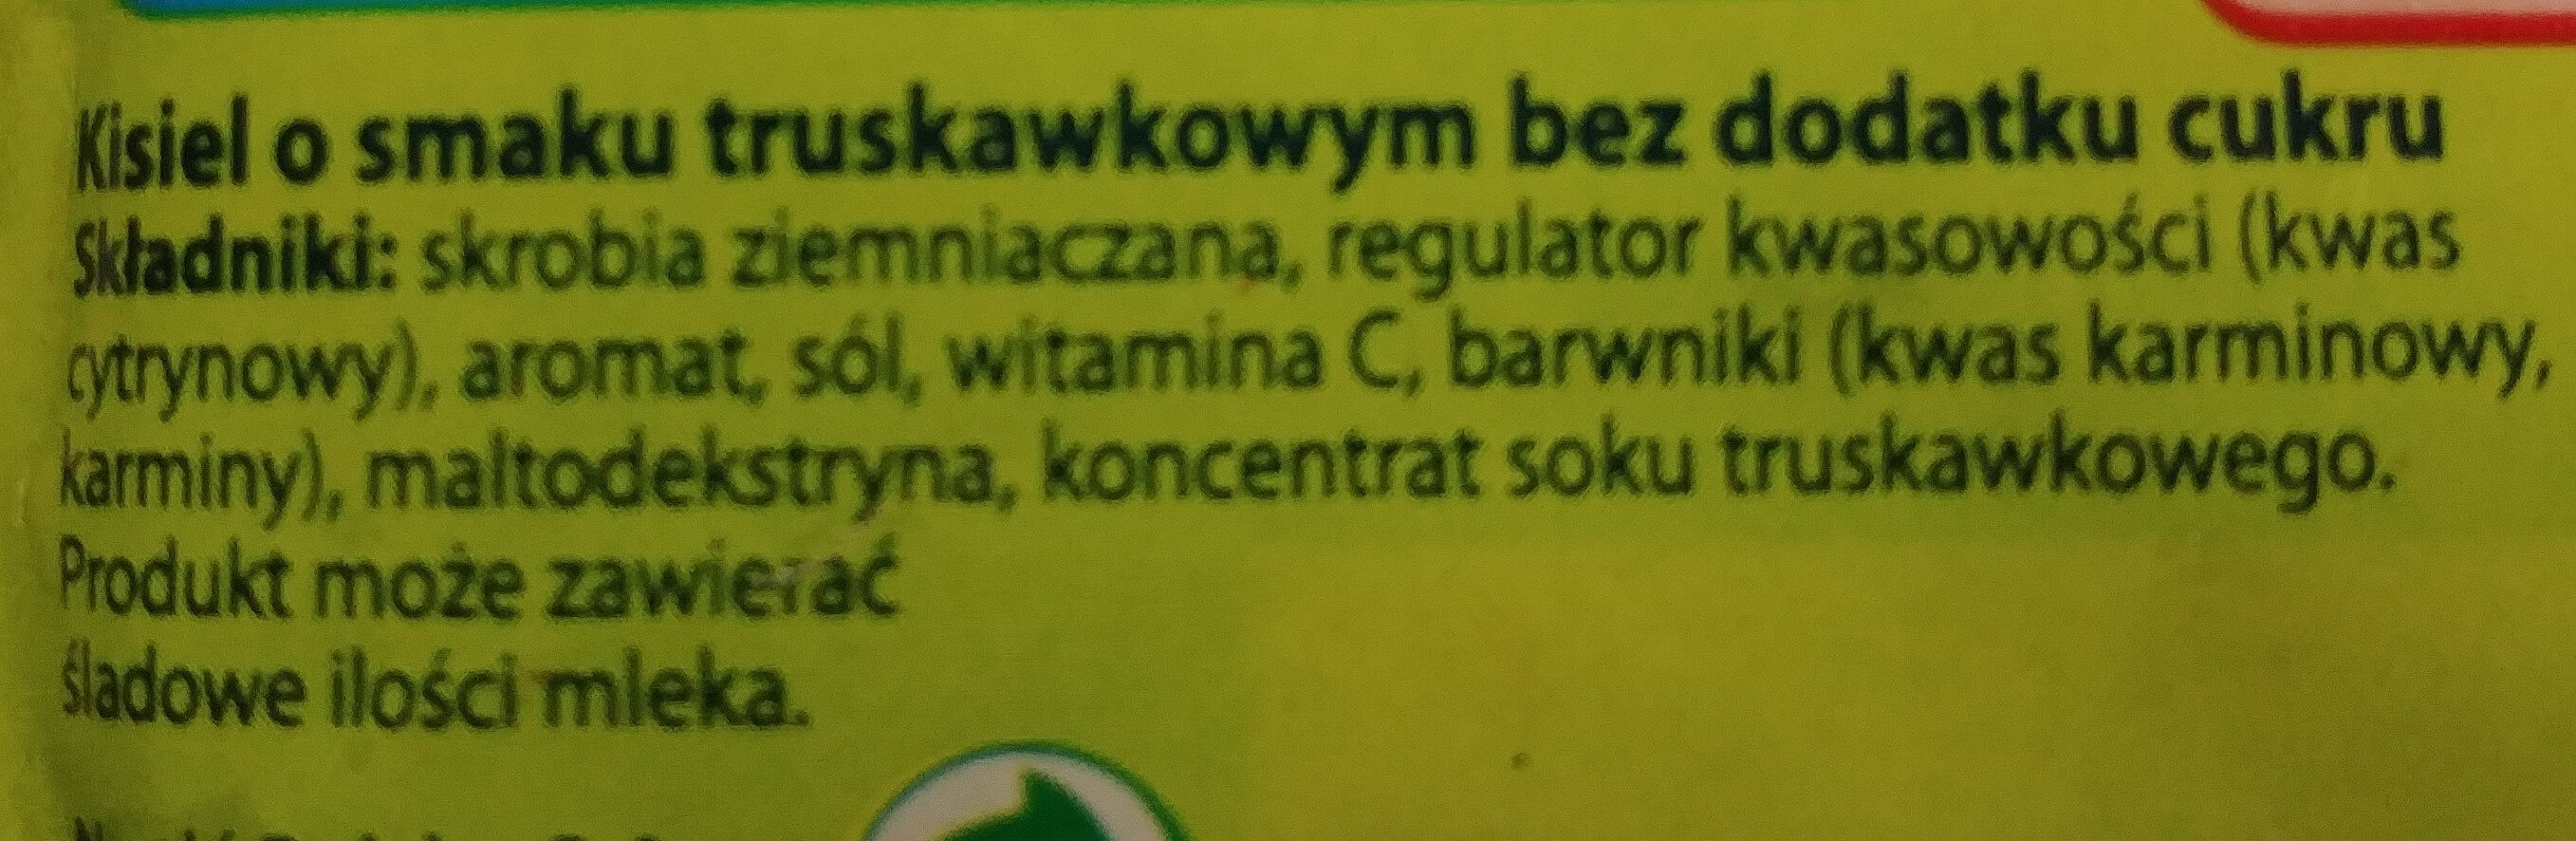 Kisiel - Ingredients - pl